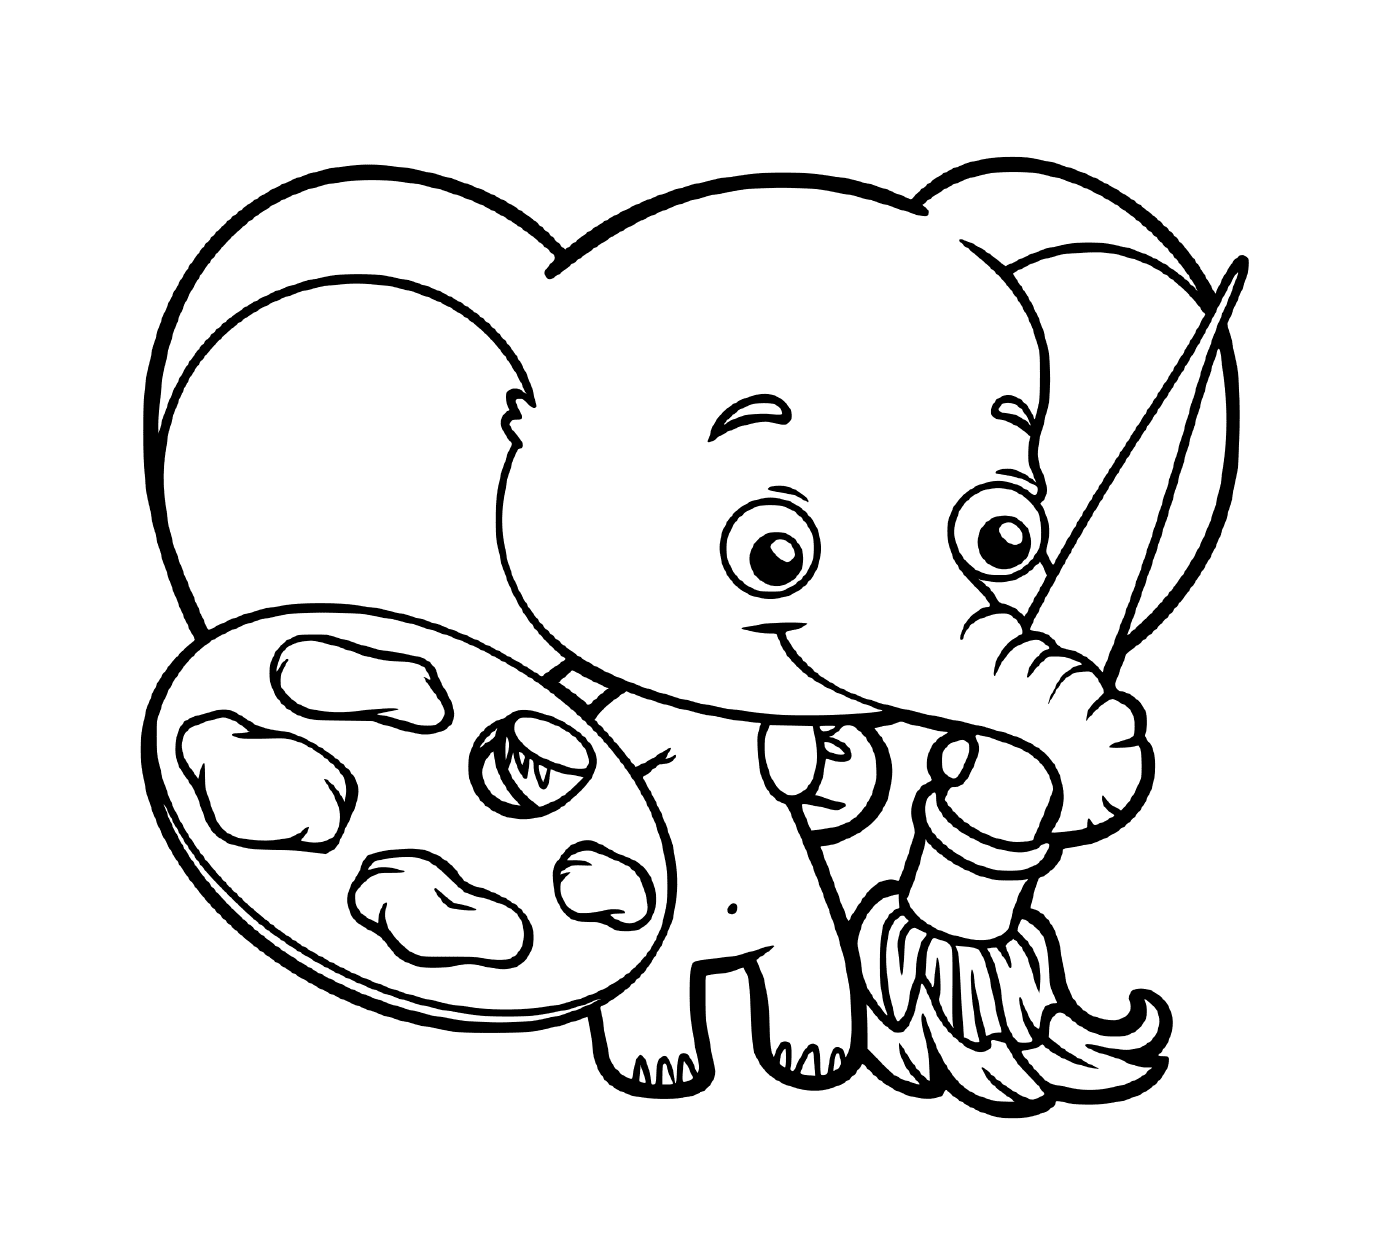  婴儿大象绘画 